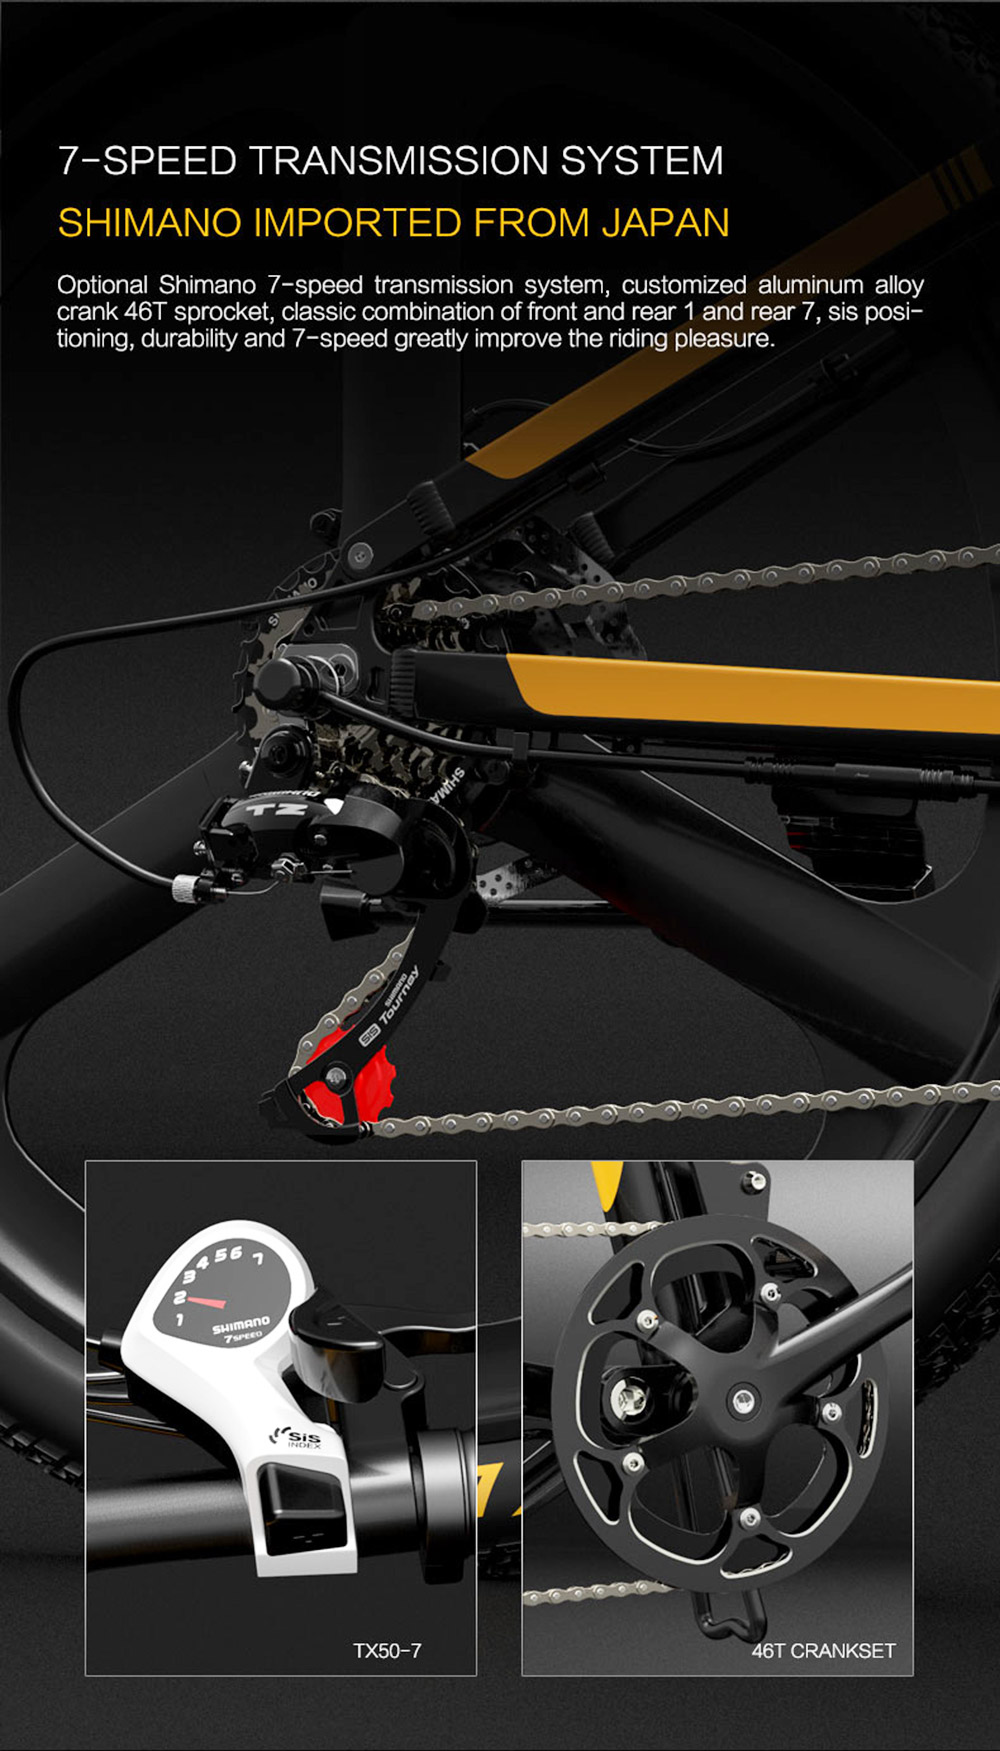 Mountain bike elettrica pieghevole BEZIOR X500PRO 500W 30Km/h Nero Giallo